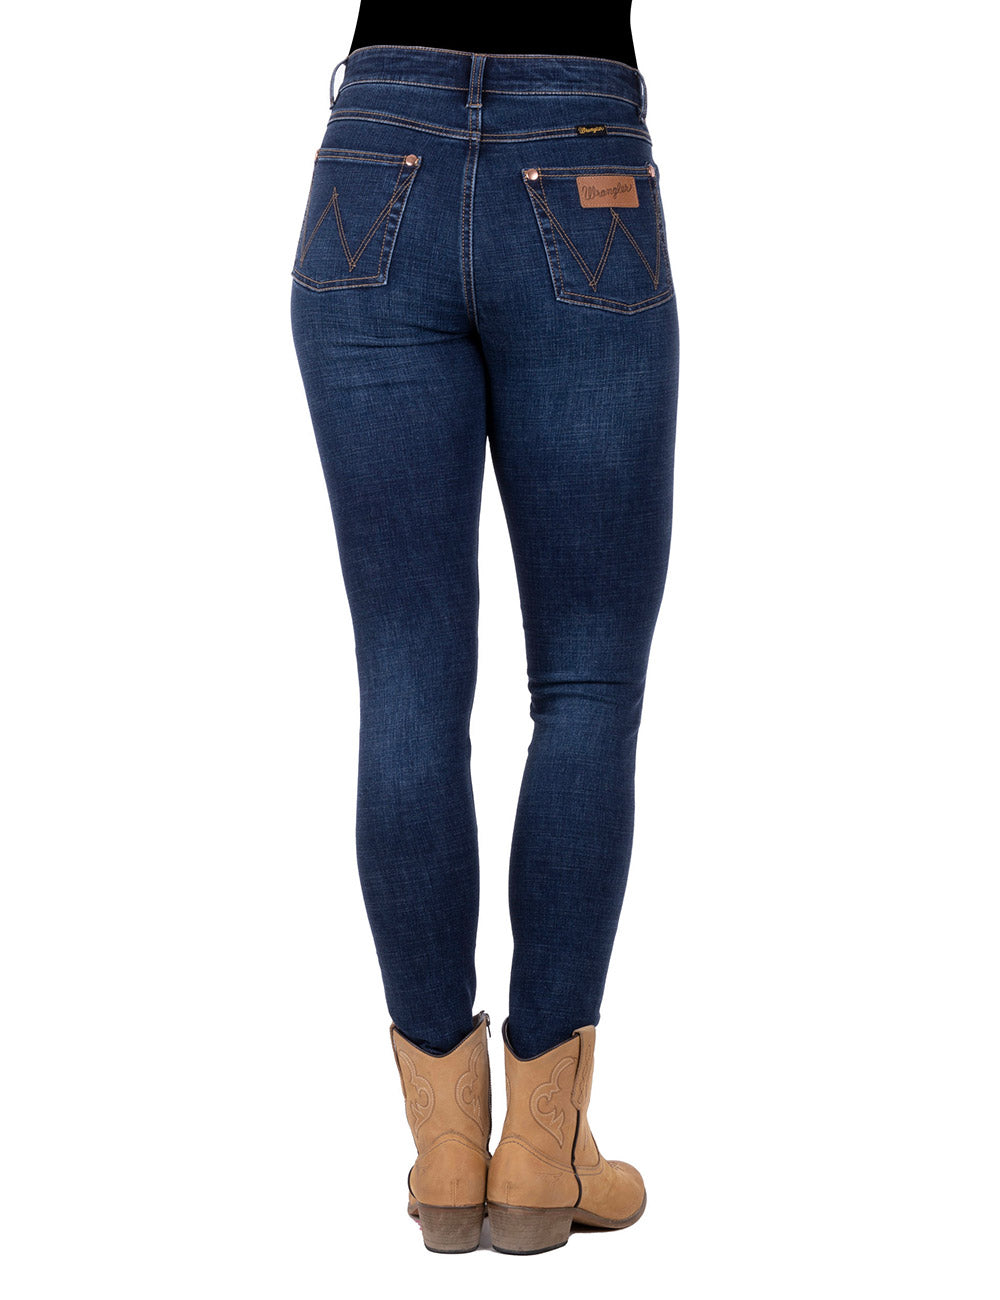 Wrangler Women's Sierra Skinny Jean 30" Leg